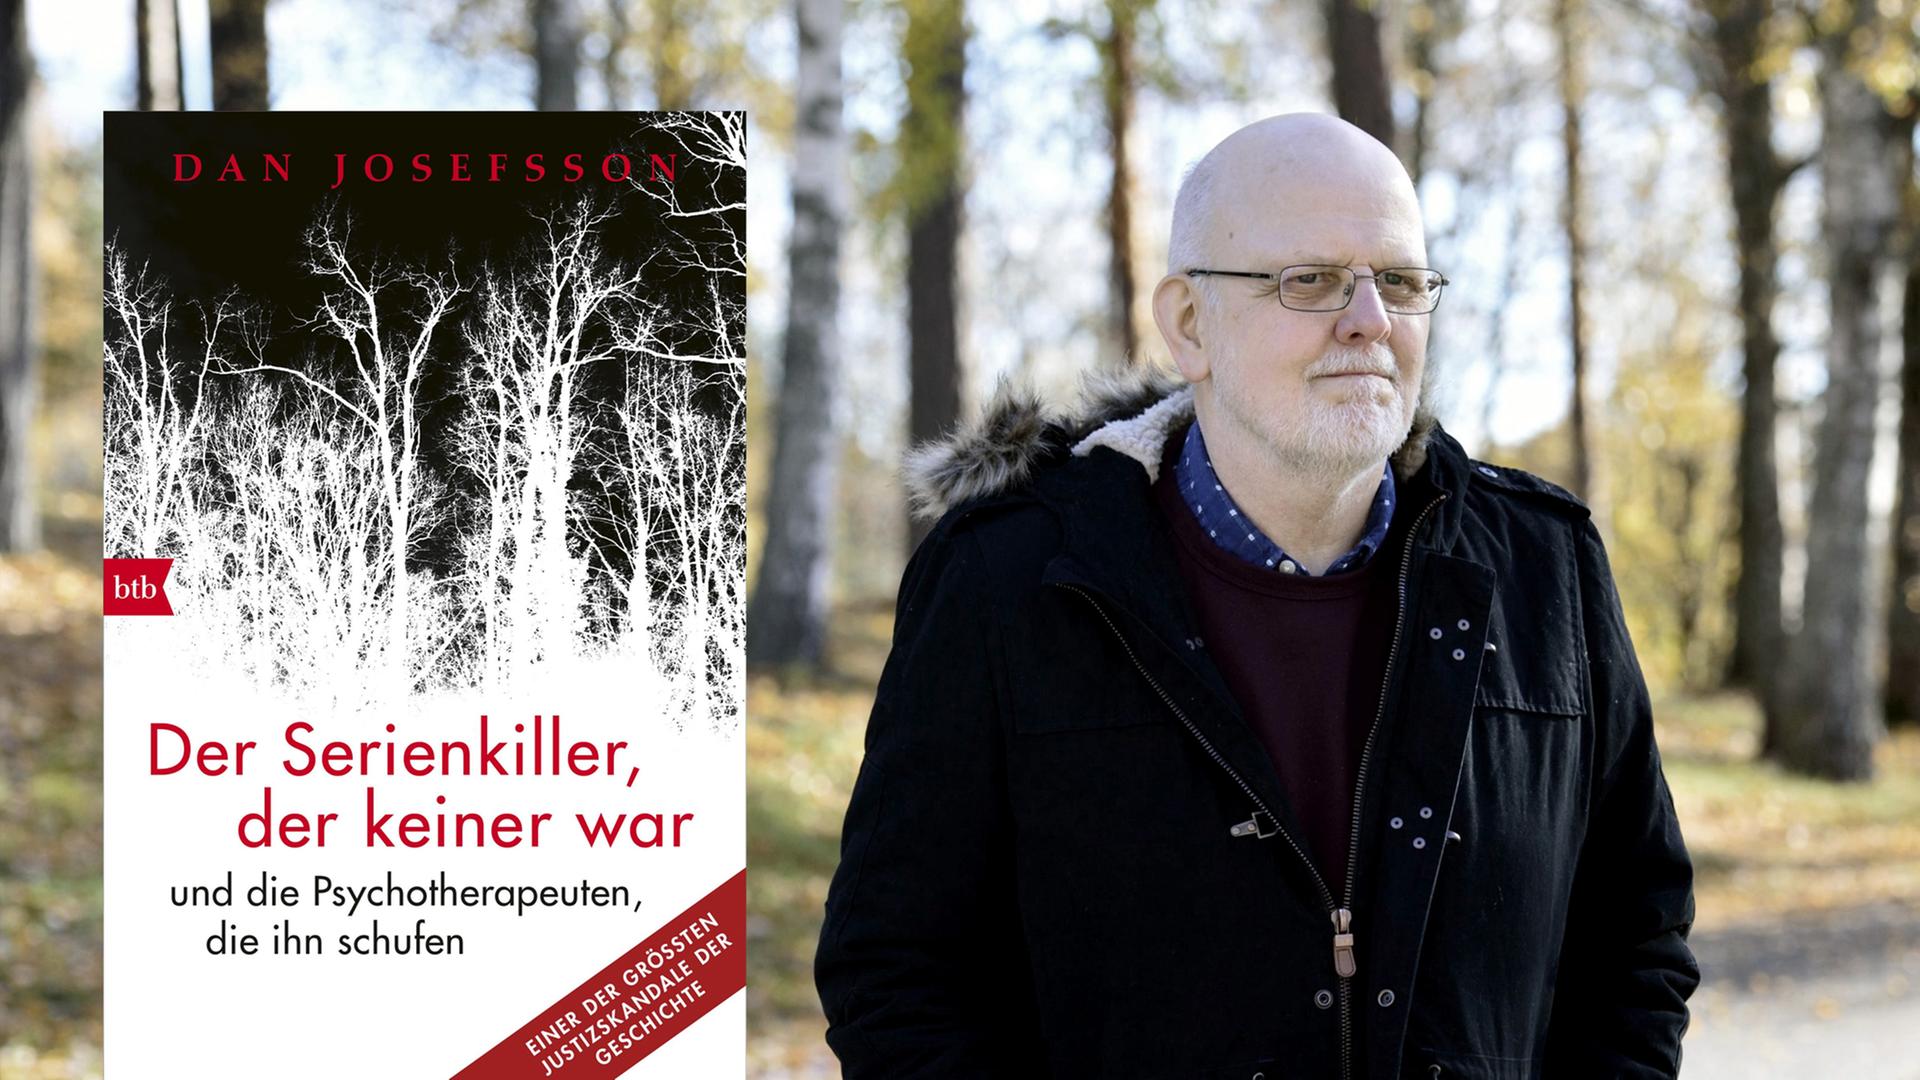 Cover von Dan Josefsson: "Der Serienkiller, der keiner war". Im Hintergrund ist Sture Bergwall zu sehen, der infolge einer Therapie 39 Morde gestand, die er gar nicht begangen hatte.